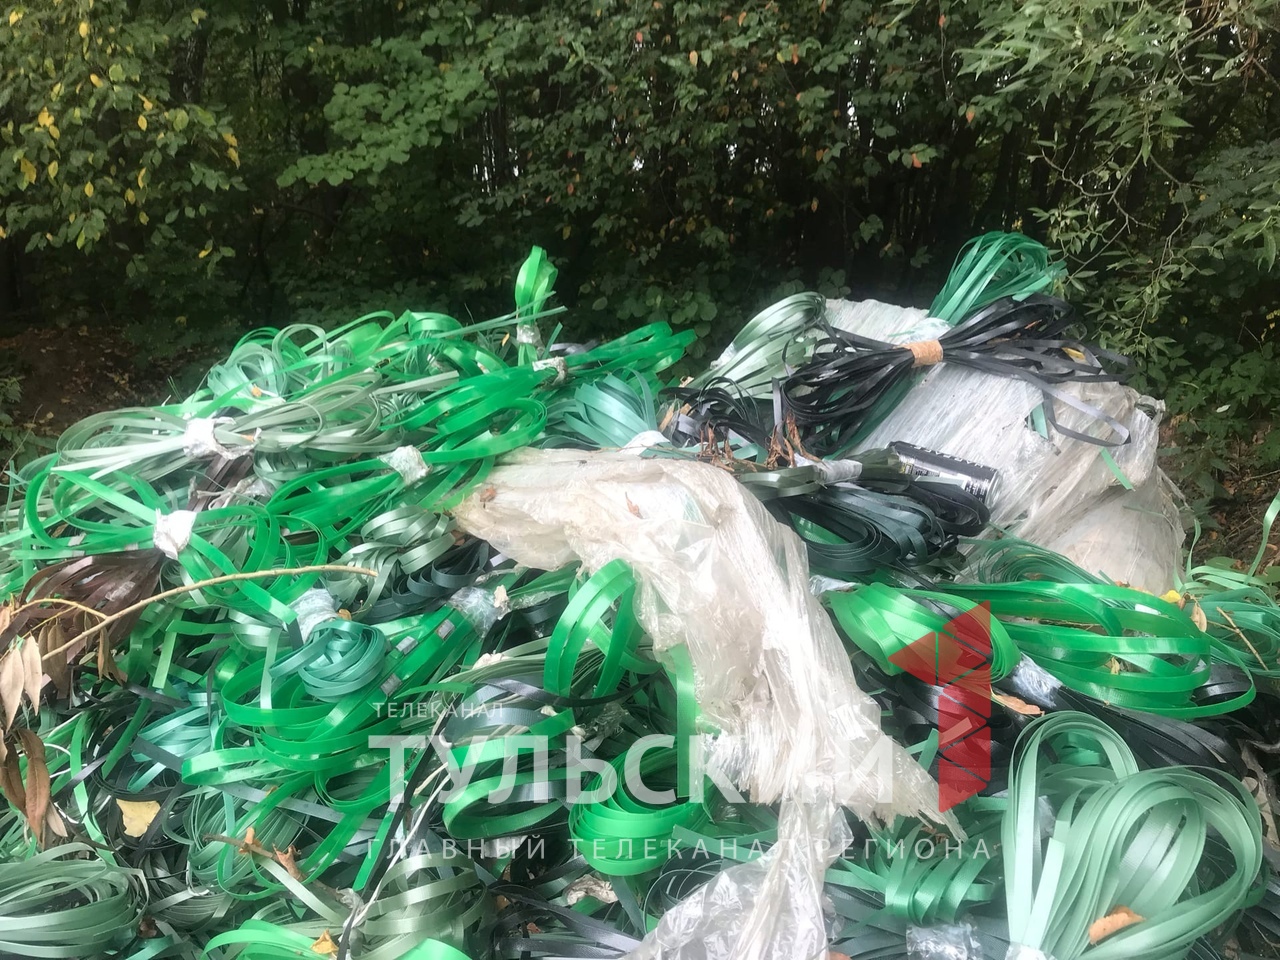 Возле трассы М-2 в Тульской области нашли больше тонны упаковочной ленты